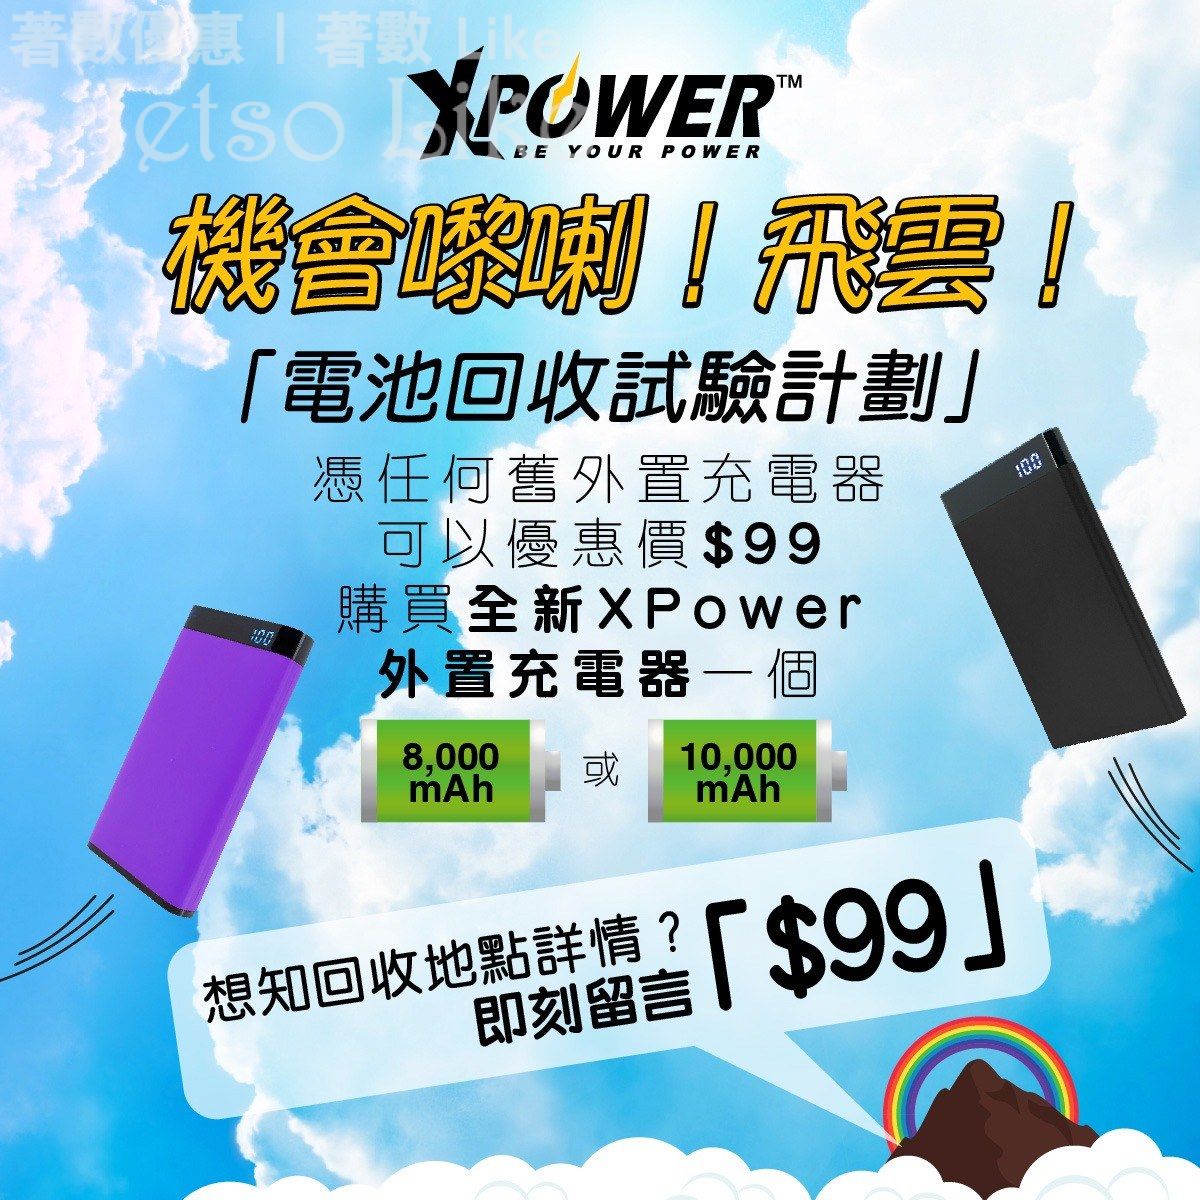 XPower 憑任何舊外置充電器 以$99購買全新XPower外置充電器